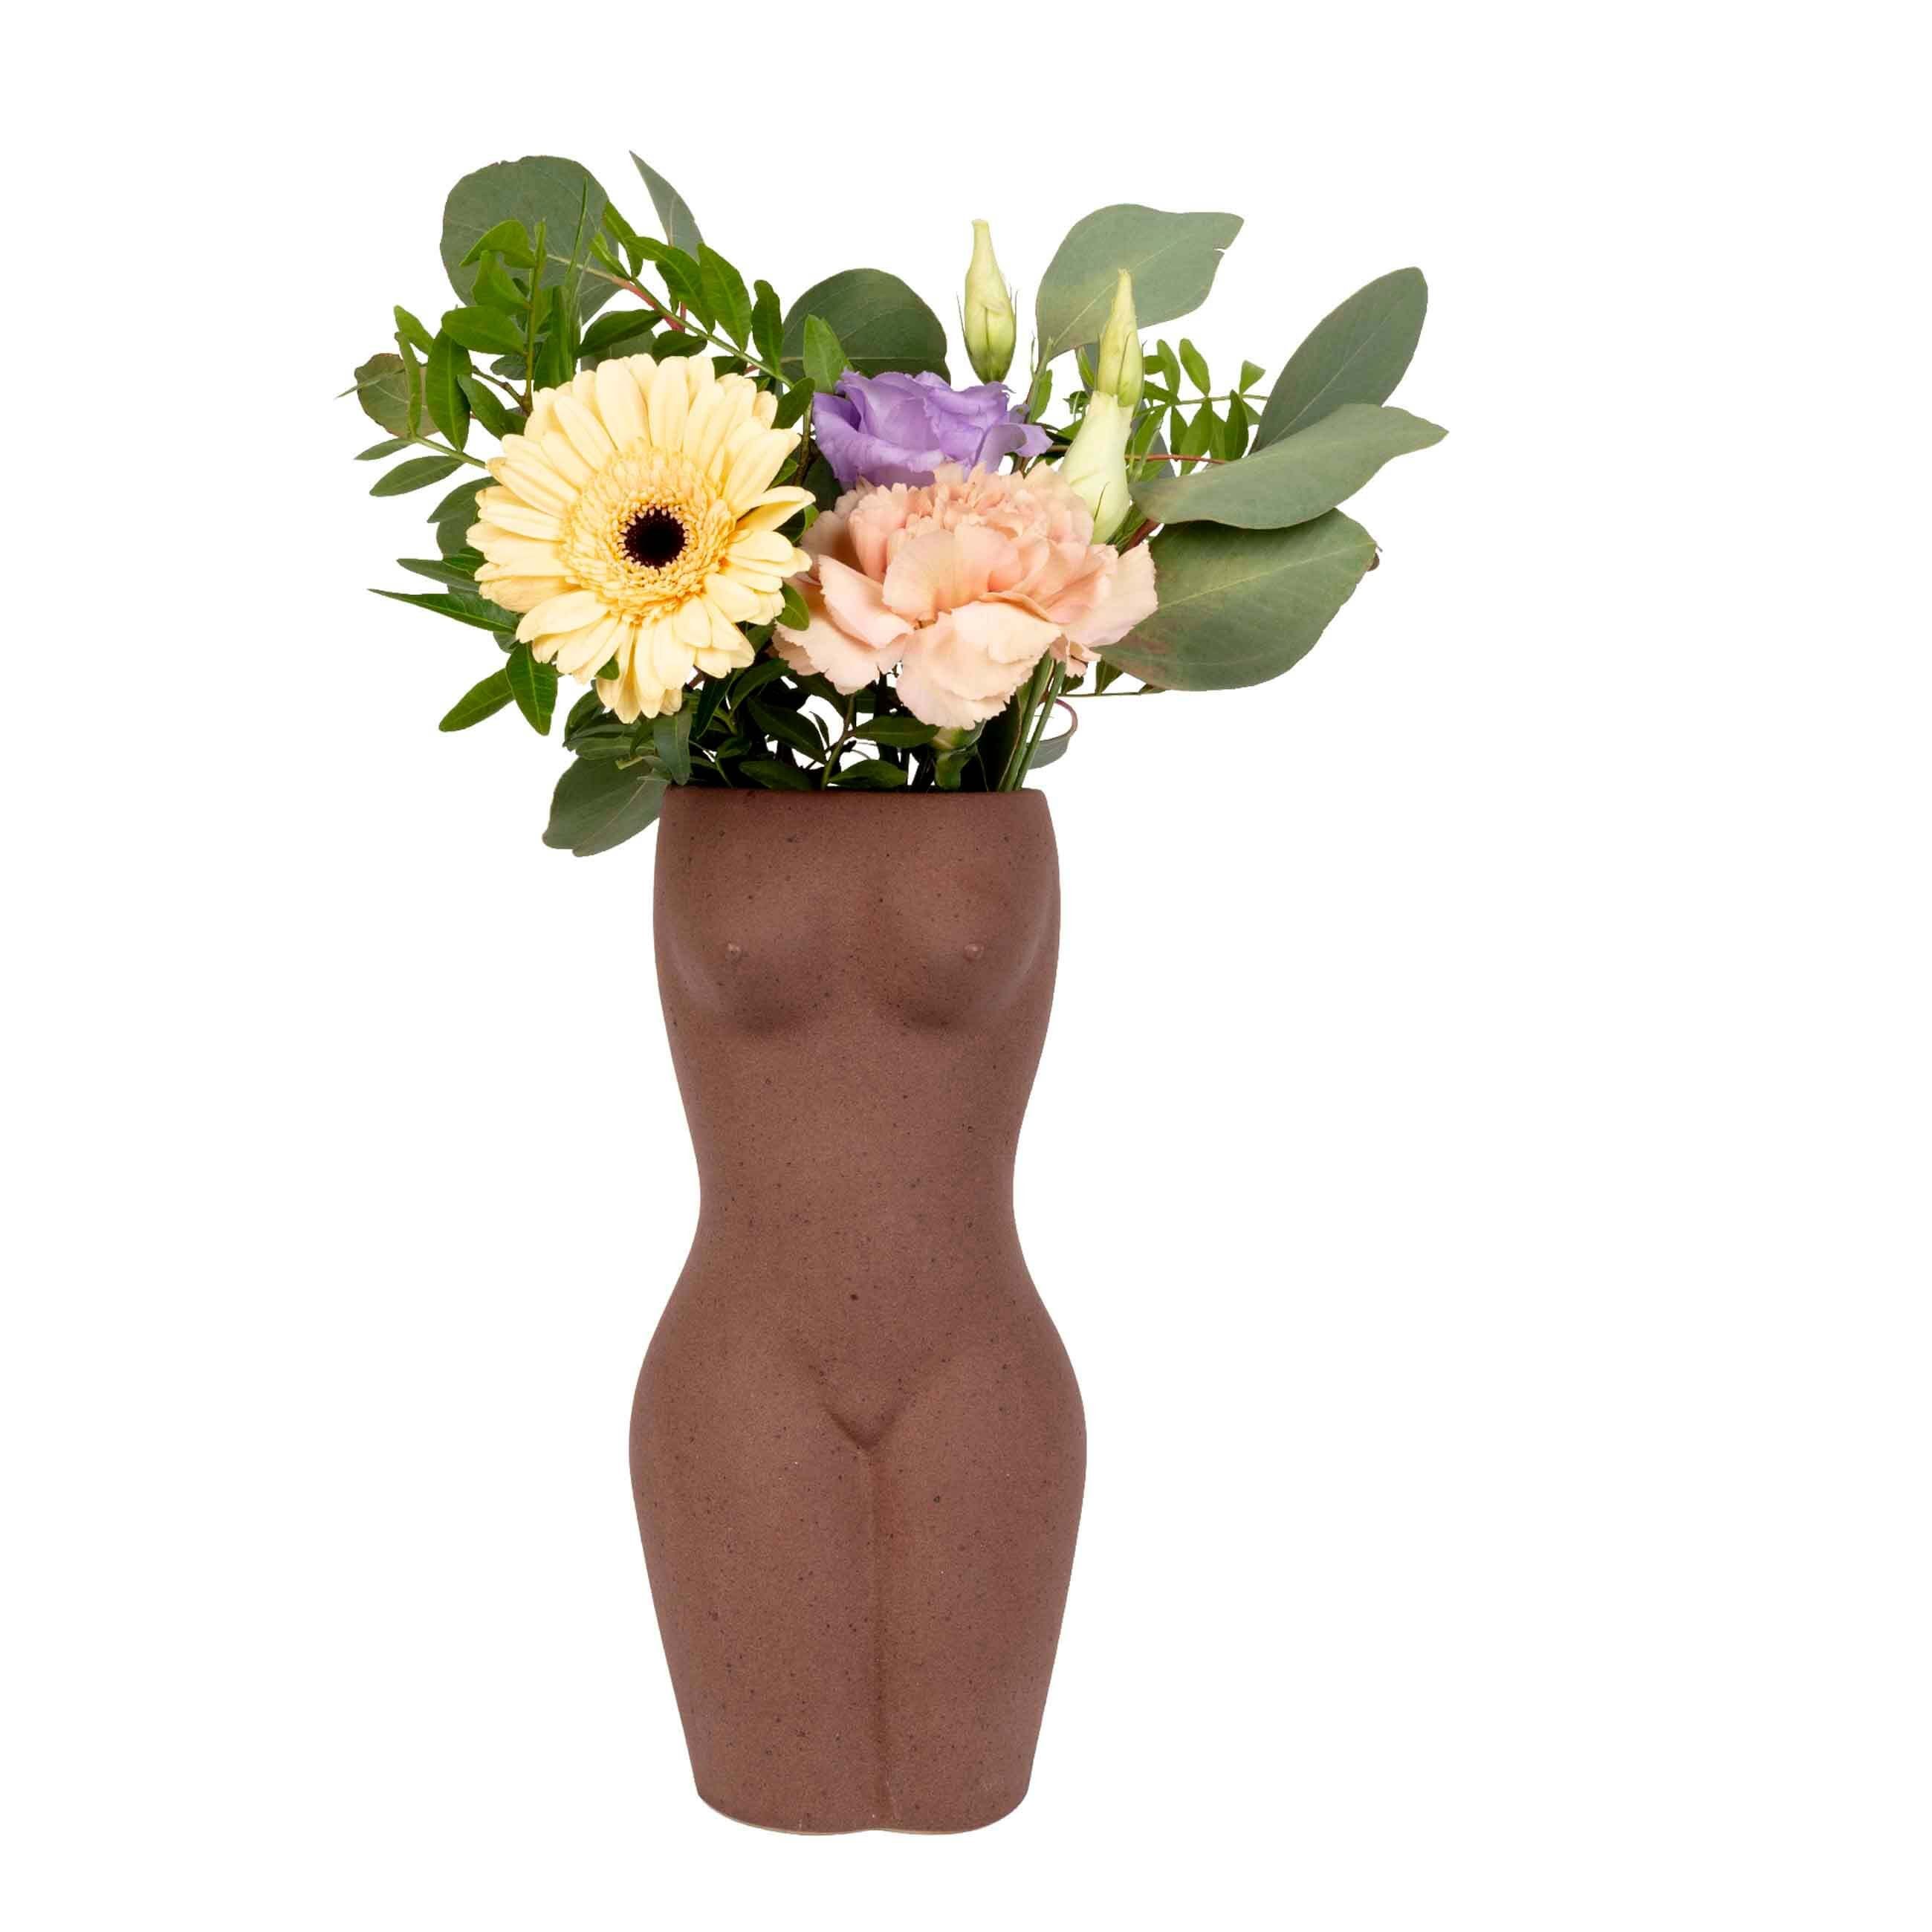 Dekovase Vase (1 DOIY Artikel), Body large